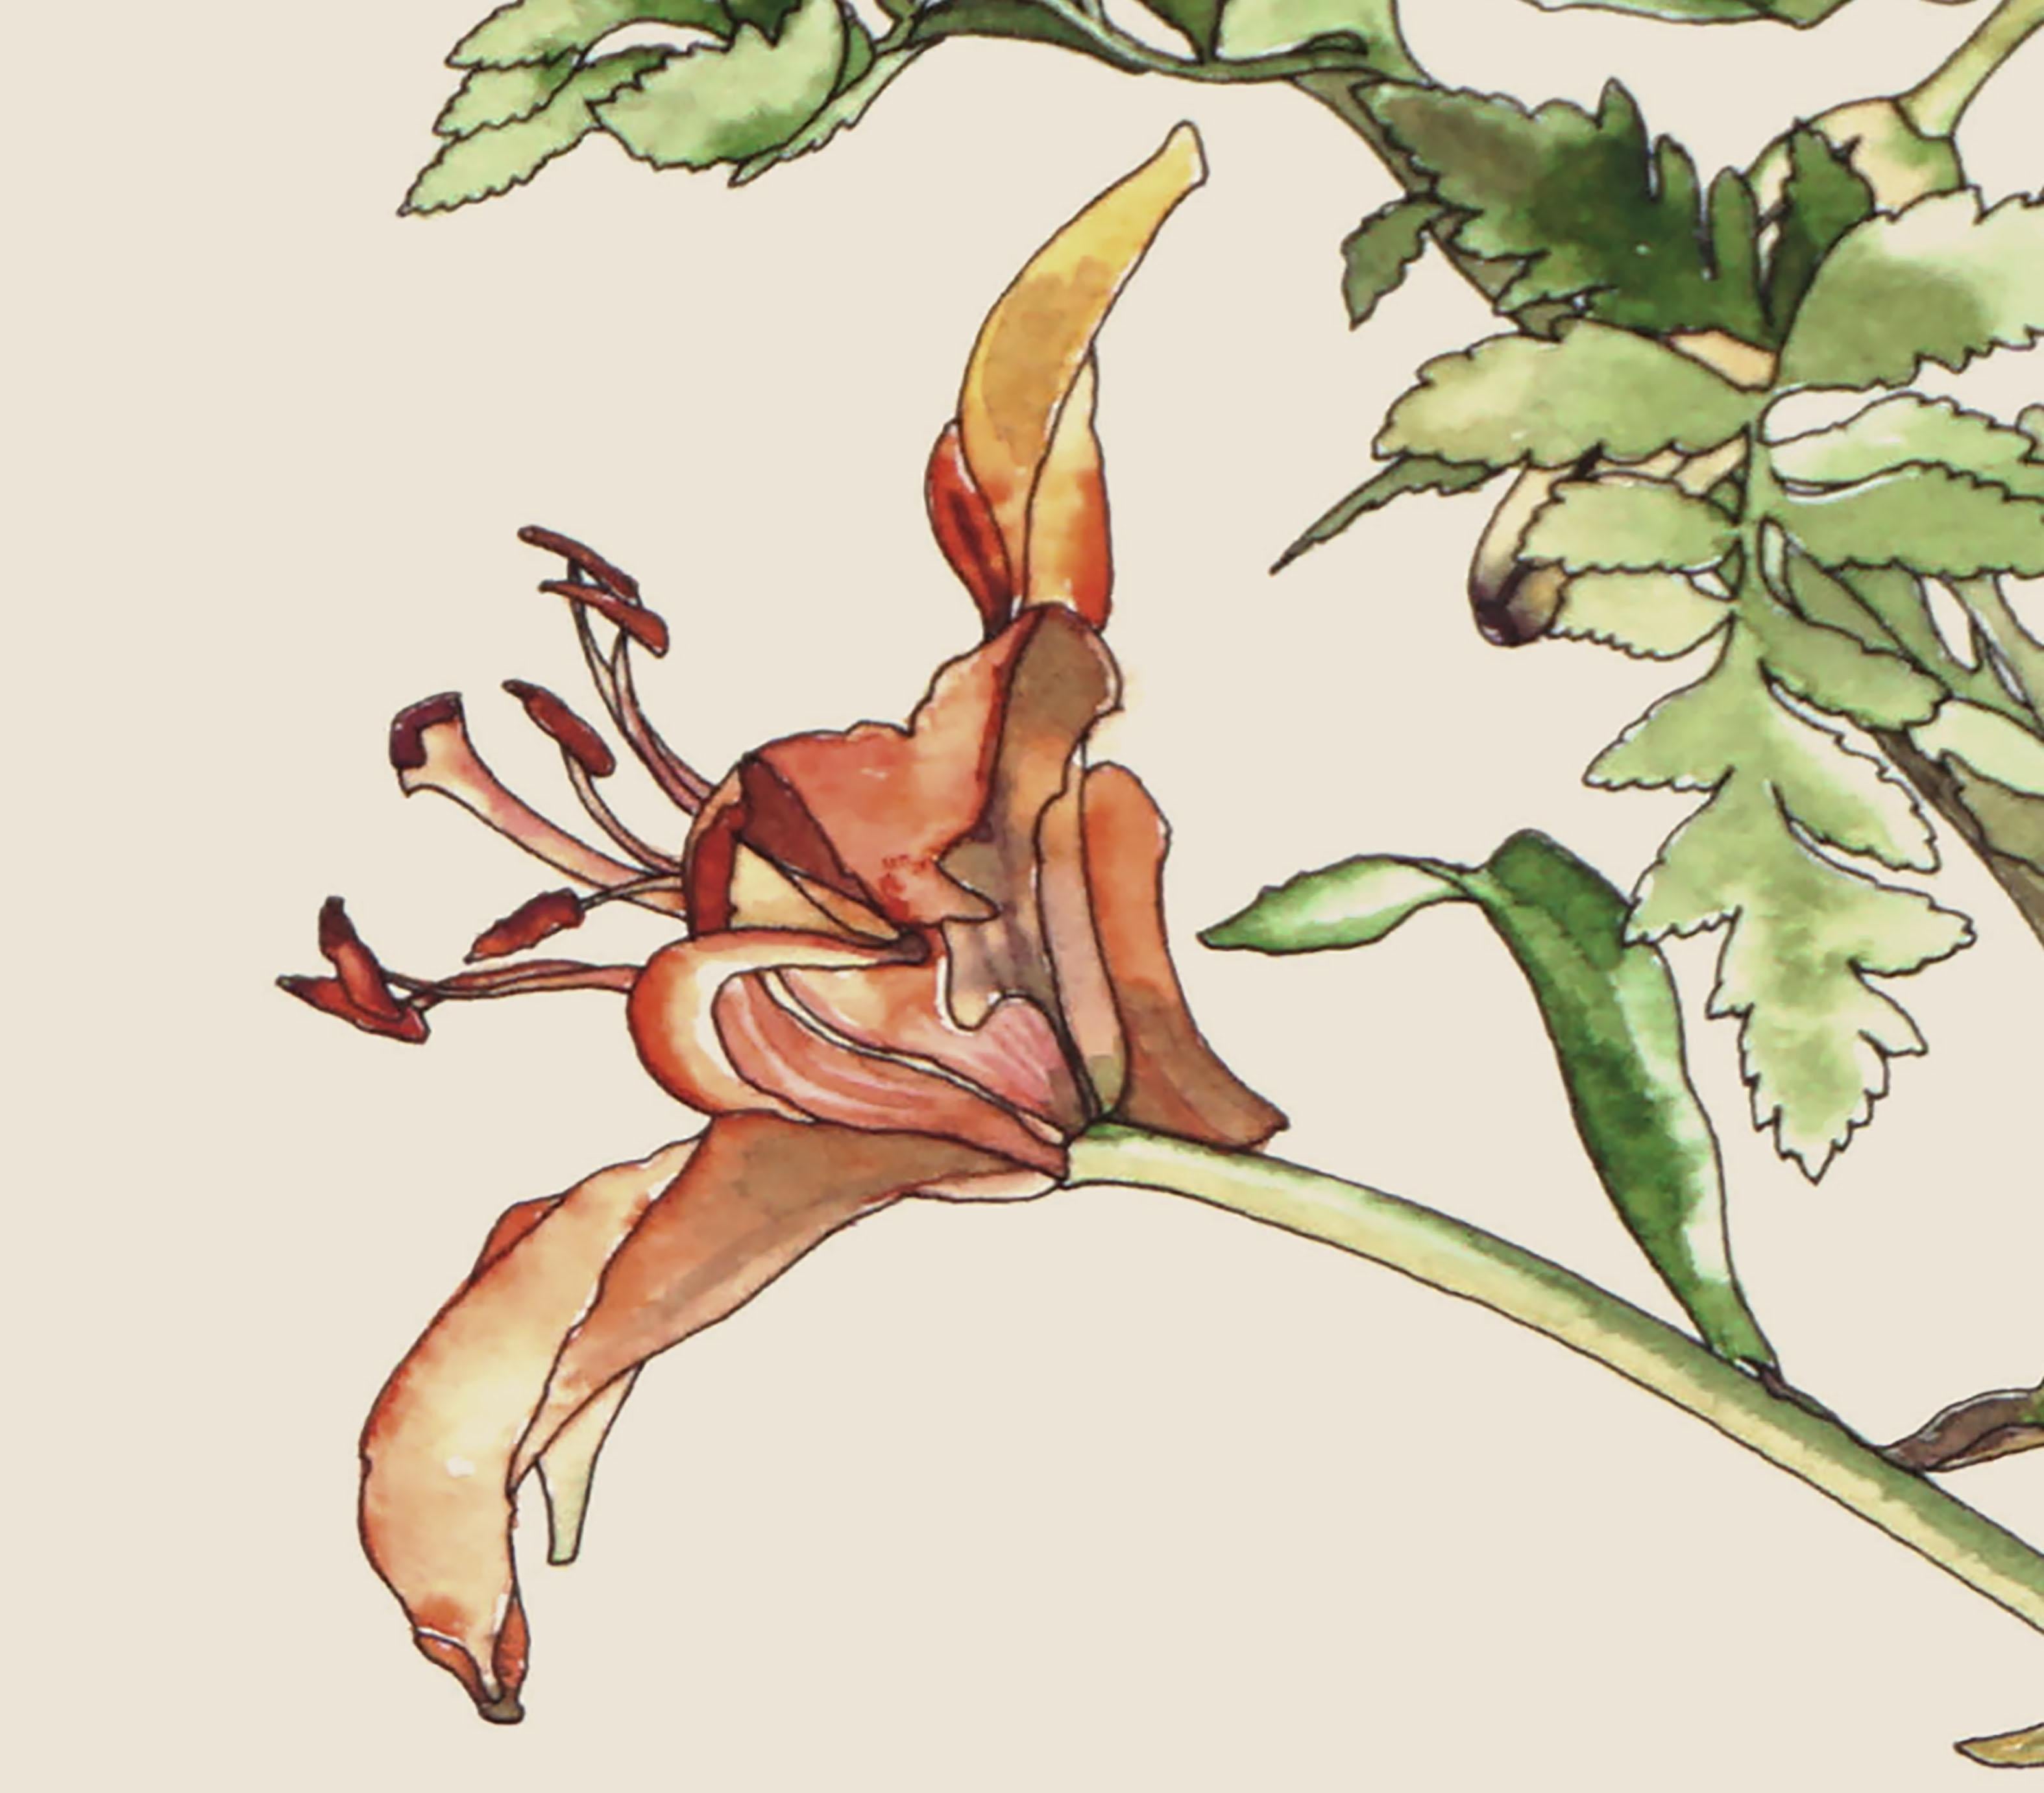 Wunderschöne Aquarell-, Feder- und Tuschestudie von Tigerlilien, mit brillanter Liebe zum Detail und einem unverkennbar zarten Stil, von der kalifornischen Künstlerin Deborah Eddy (Amerikanerin, geb. 1943). Signiert 